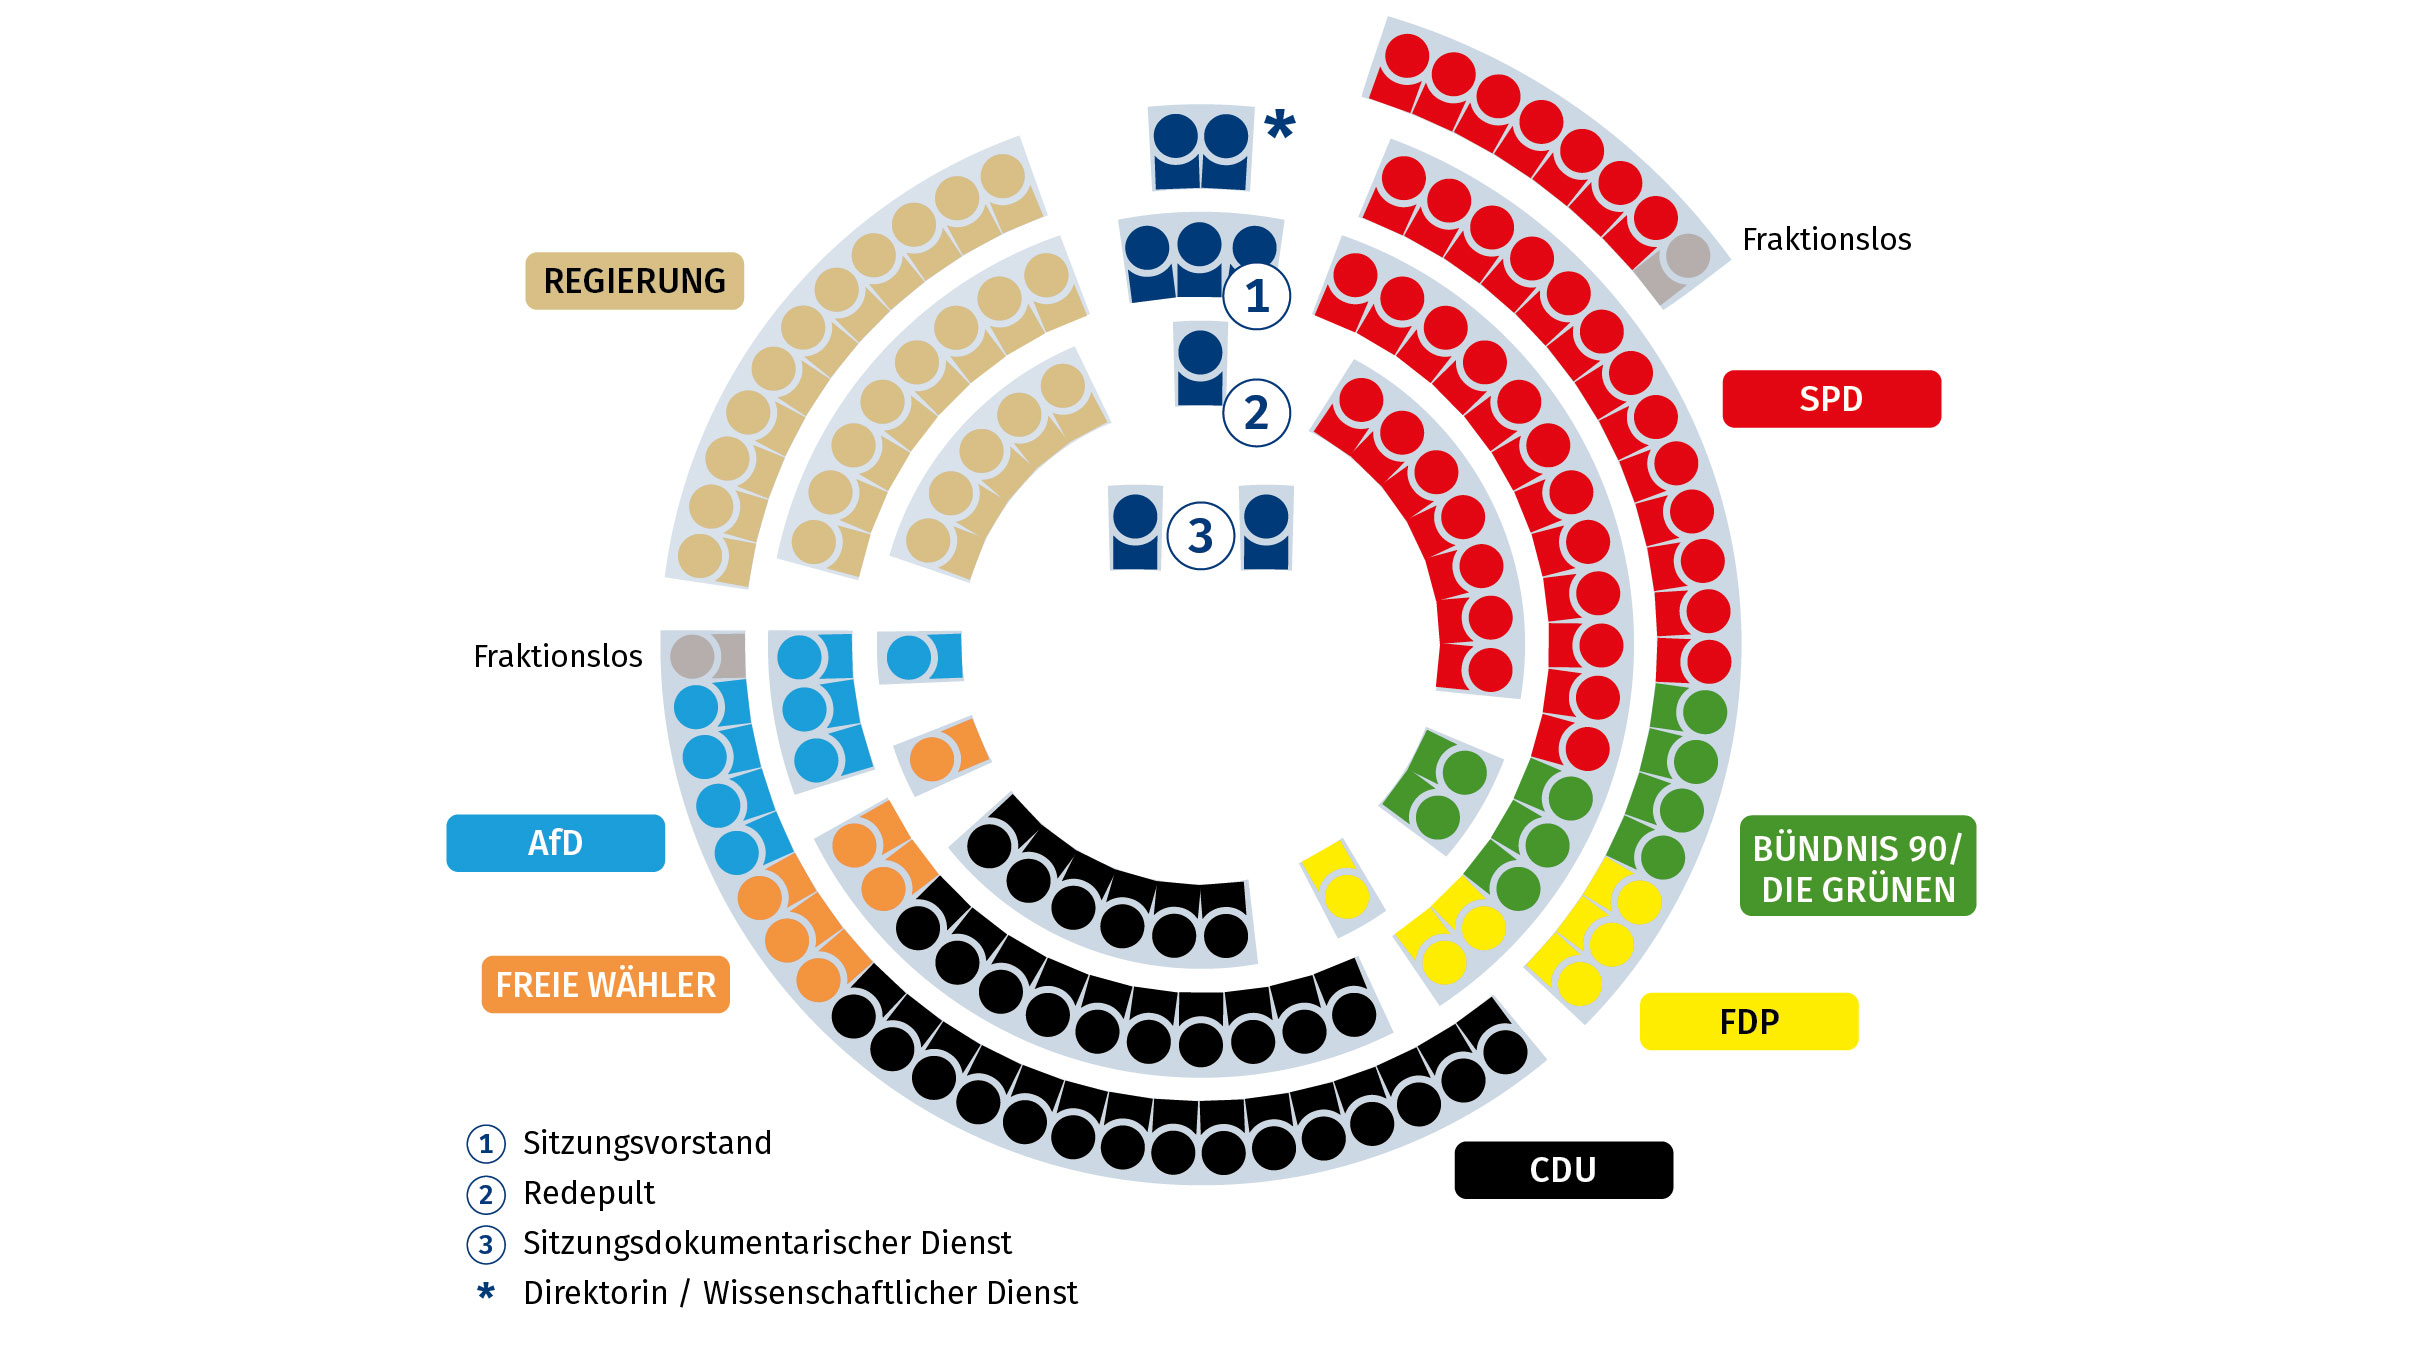 Sitzordnung der Abgeordneten des Landtags Rheinland-Pfalz im Plenarsaal des Deutschhauses in der 18. Wahlperiode; in der Grafik sind die Sitzplätze der Fraktionen farblich unterschiedlich dargestellt: SPD-Fraktion (rote Sitzplätze), Fraktion BÜNDNIS 90 / DIE GRÜNEN (grüne Sitzplätze), FDP-Fraktion (gelbe Sitzplätze), CDU-Fraktion (schwarze Sitzplätze), Fraktion FREIE WÄHLER (orange Sitzplätze), AfD-Fraktion (hellblaue Sitzplätze), fraktionslose Abgeordnete (graue Sitzplätze), Vertreter der Regierung (ockerfarbene Sitzplätze); Redebereich (dunkelblaue Sitzplätze) betrifft den Sitzungsvorstand, das Redepult, den sitzungsdokumentarischen Dienst, die Direktorin und Vertreter des Wissenschaftlichen Dienstes